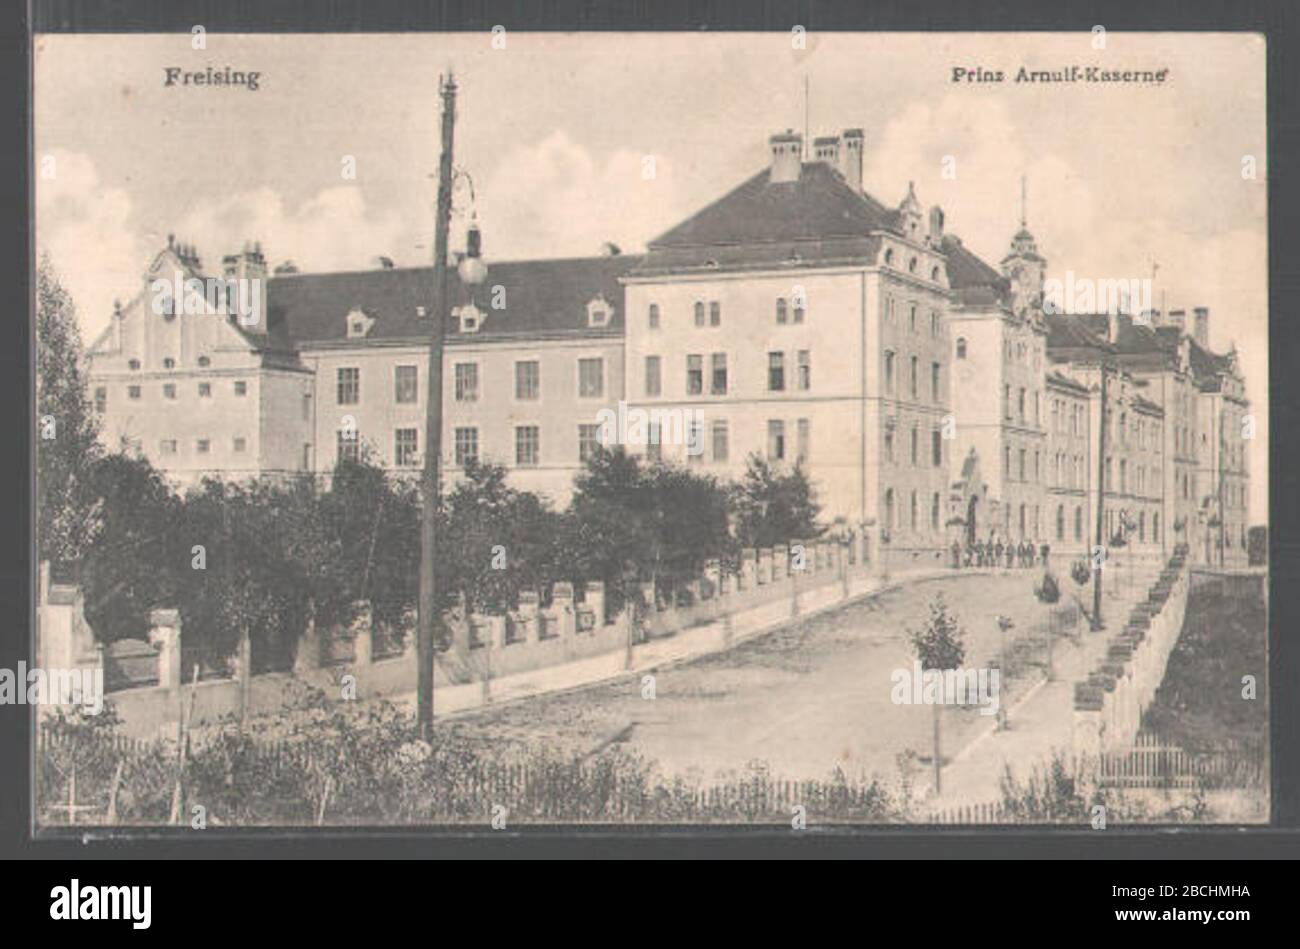 'Deutsch: Prinz Arnulf Kaserne in Freising; alte Postkarte; Unknown author; ' Stock Photo